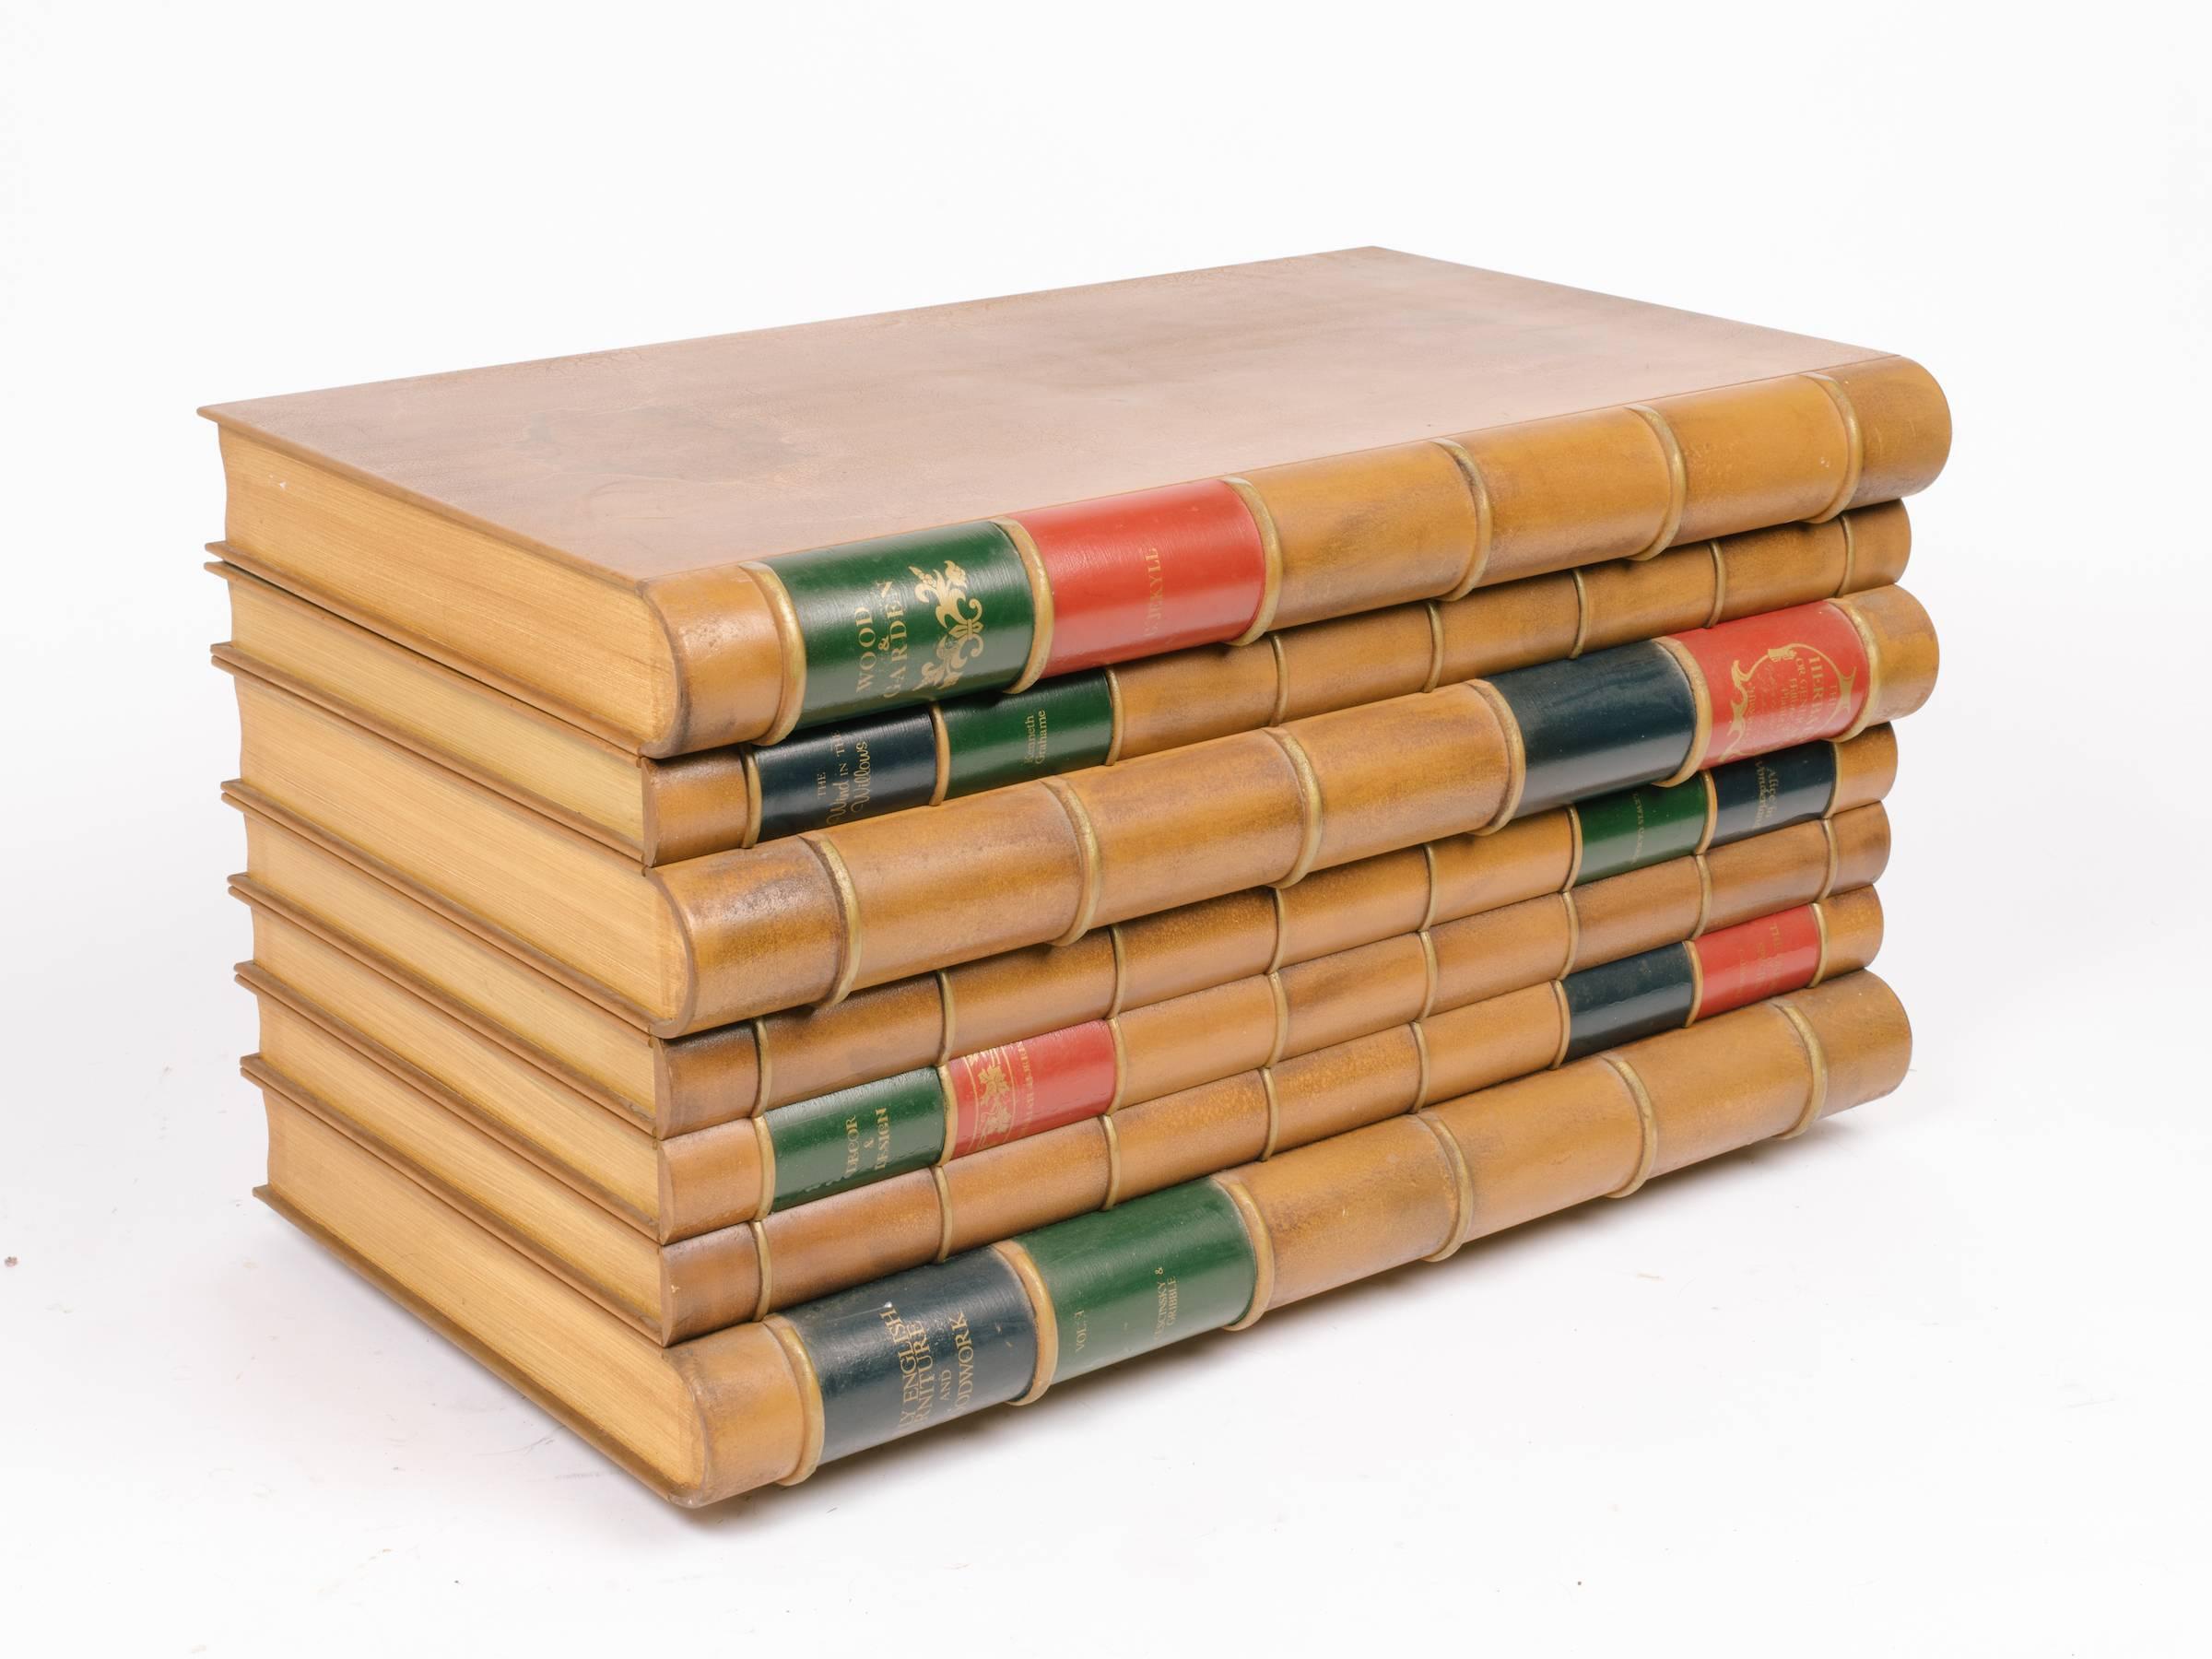 Fausse pile de livres fantaisiste. Fabriqué en bois massif. Le dessus s'ouvre pour ranger les articles. Soit un coffre ou peut être utilisé comme une table.